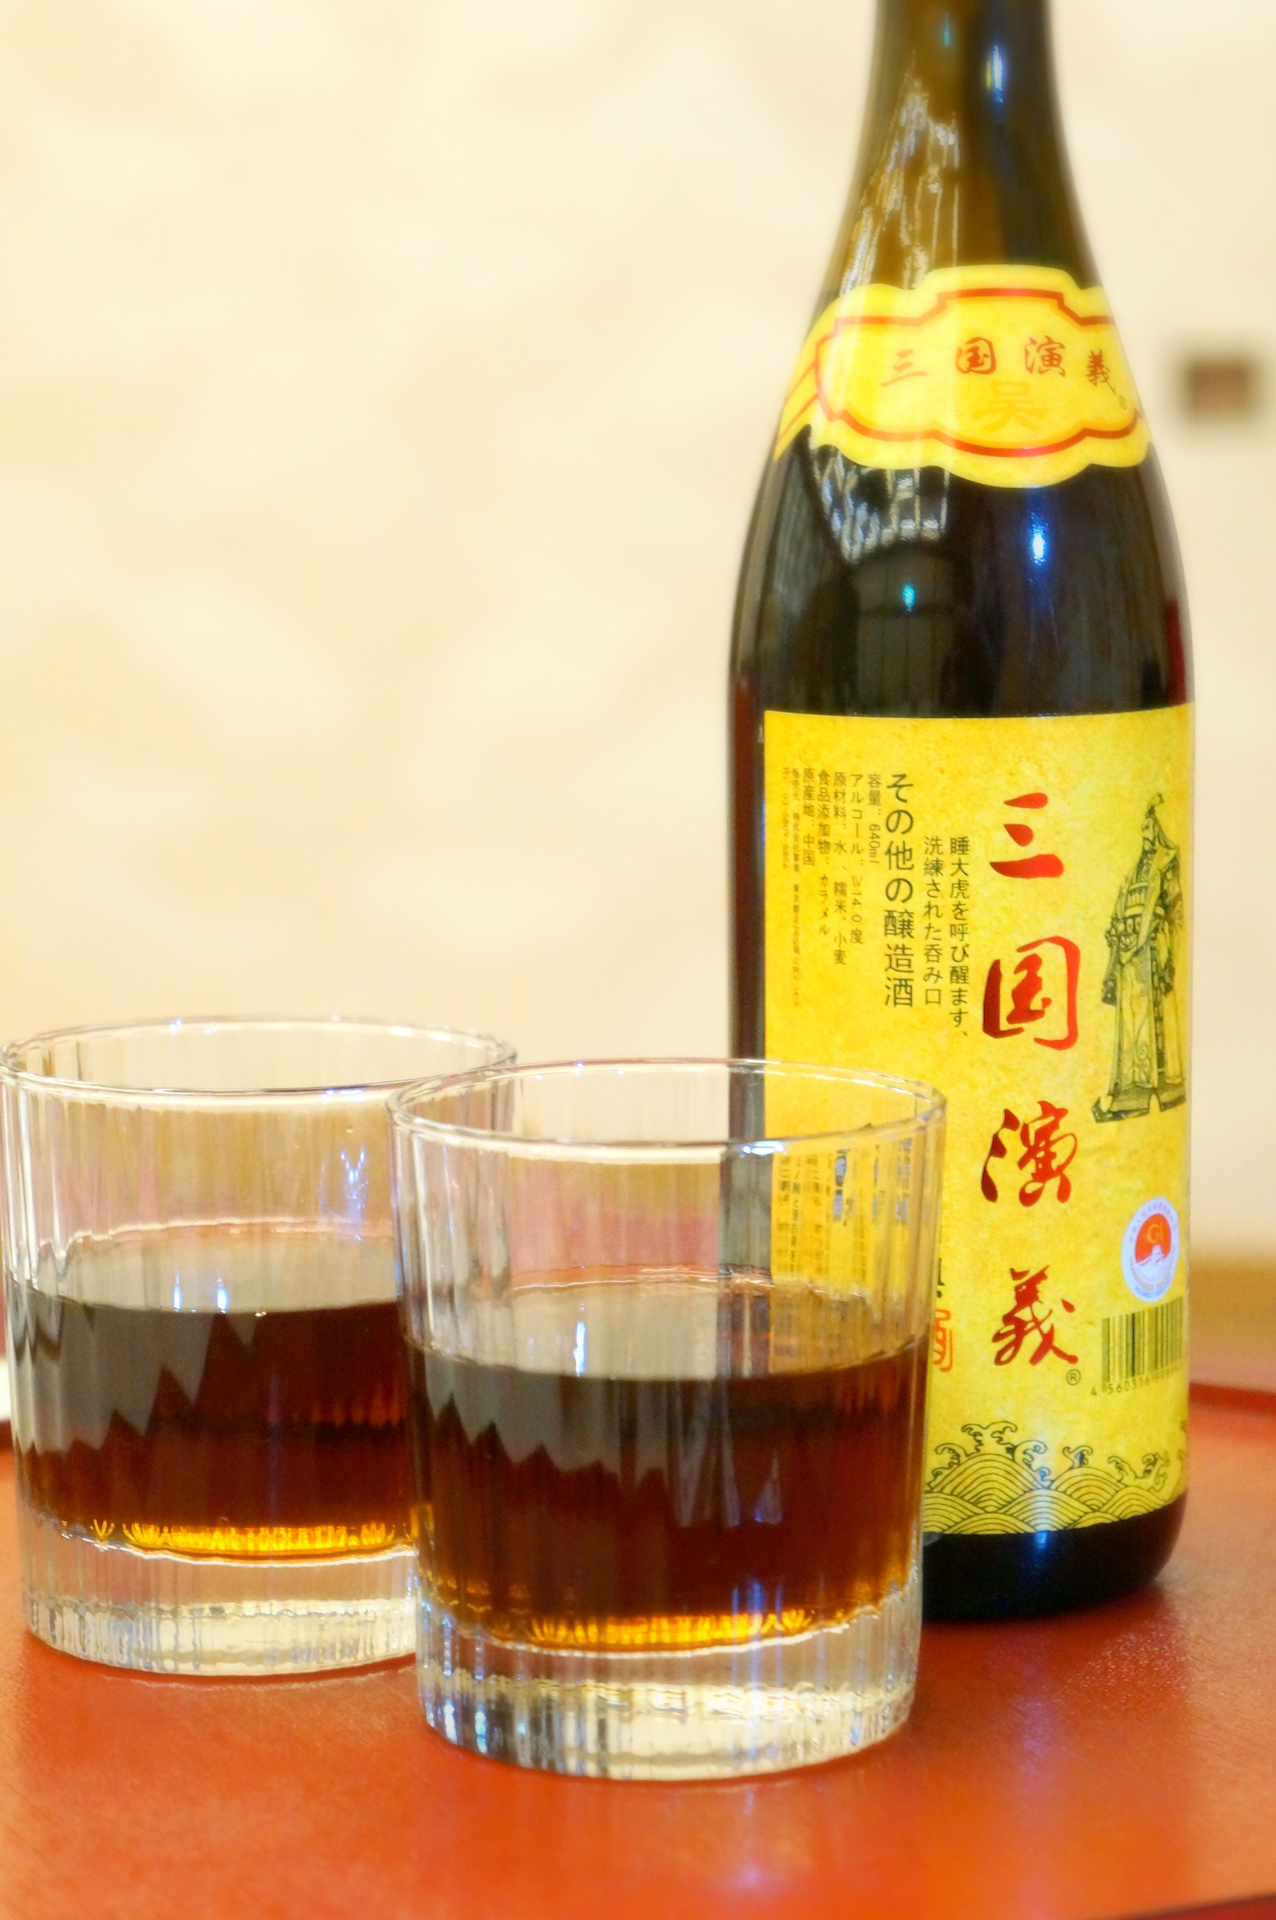 中華ディナー「揚州コース」で追加注文した紹興酒